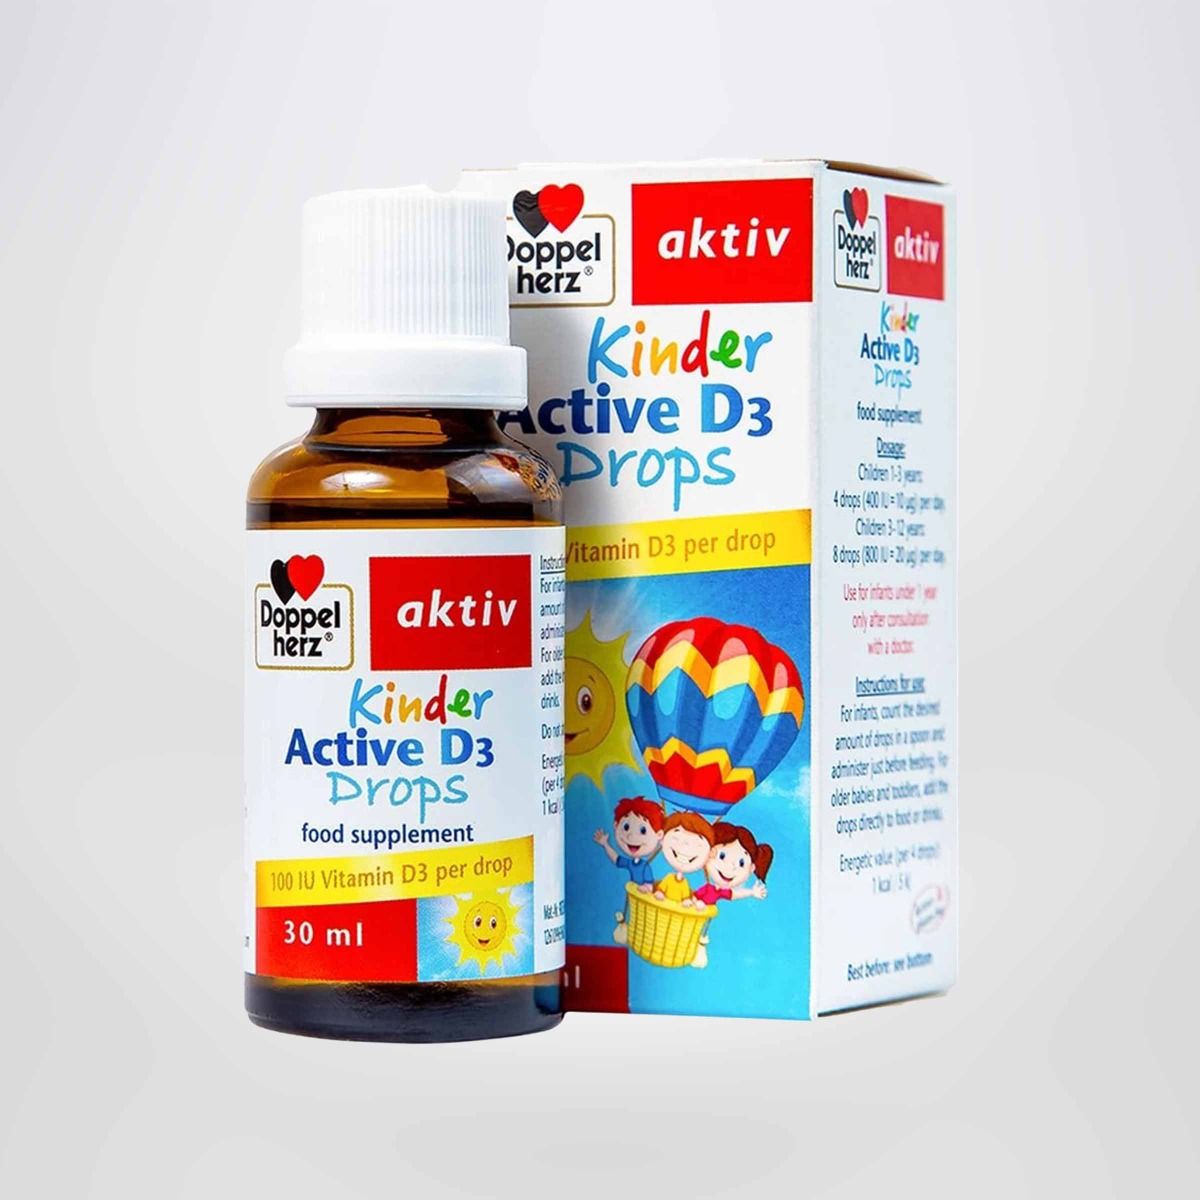 Siro bổ sung Vitamin D3, tăng đề kháng cho trẻ Doppelherz Aktiv Kinder Active D3 Drops 30ml